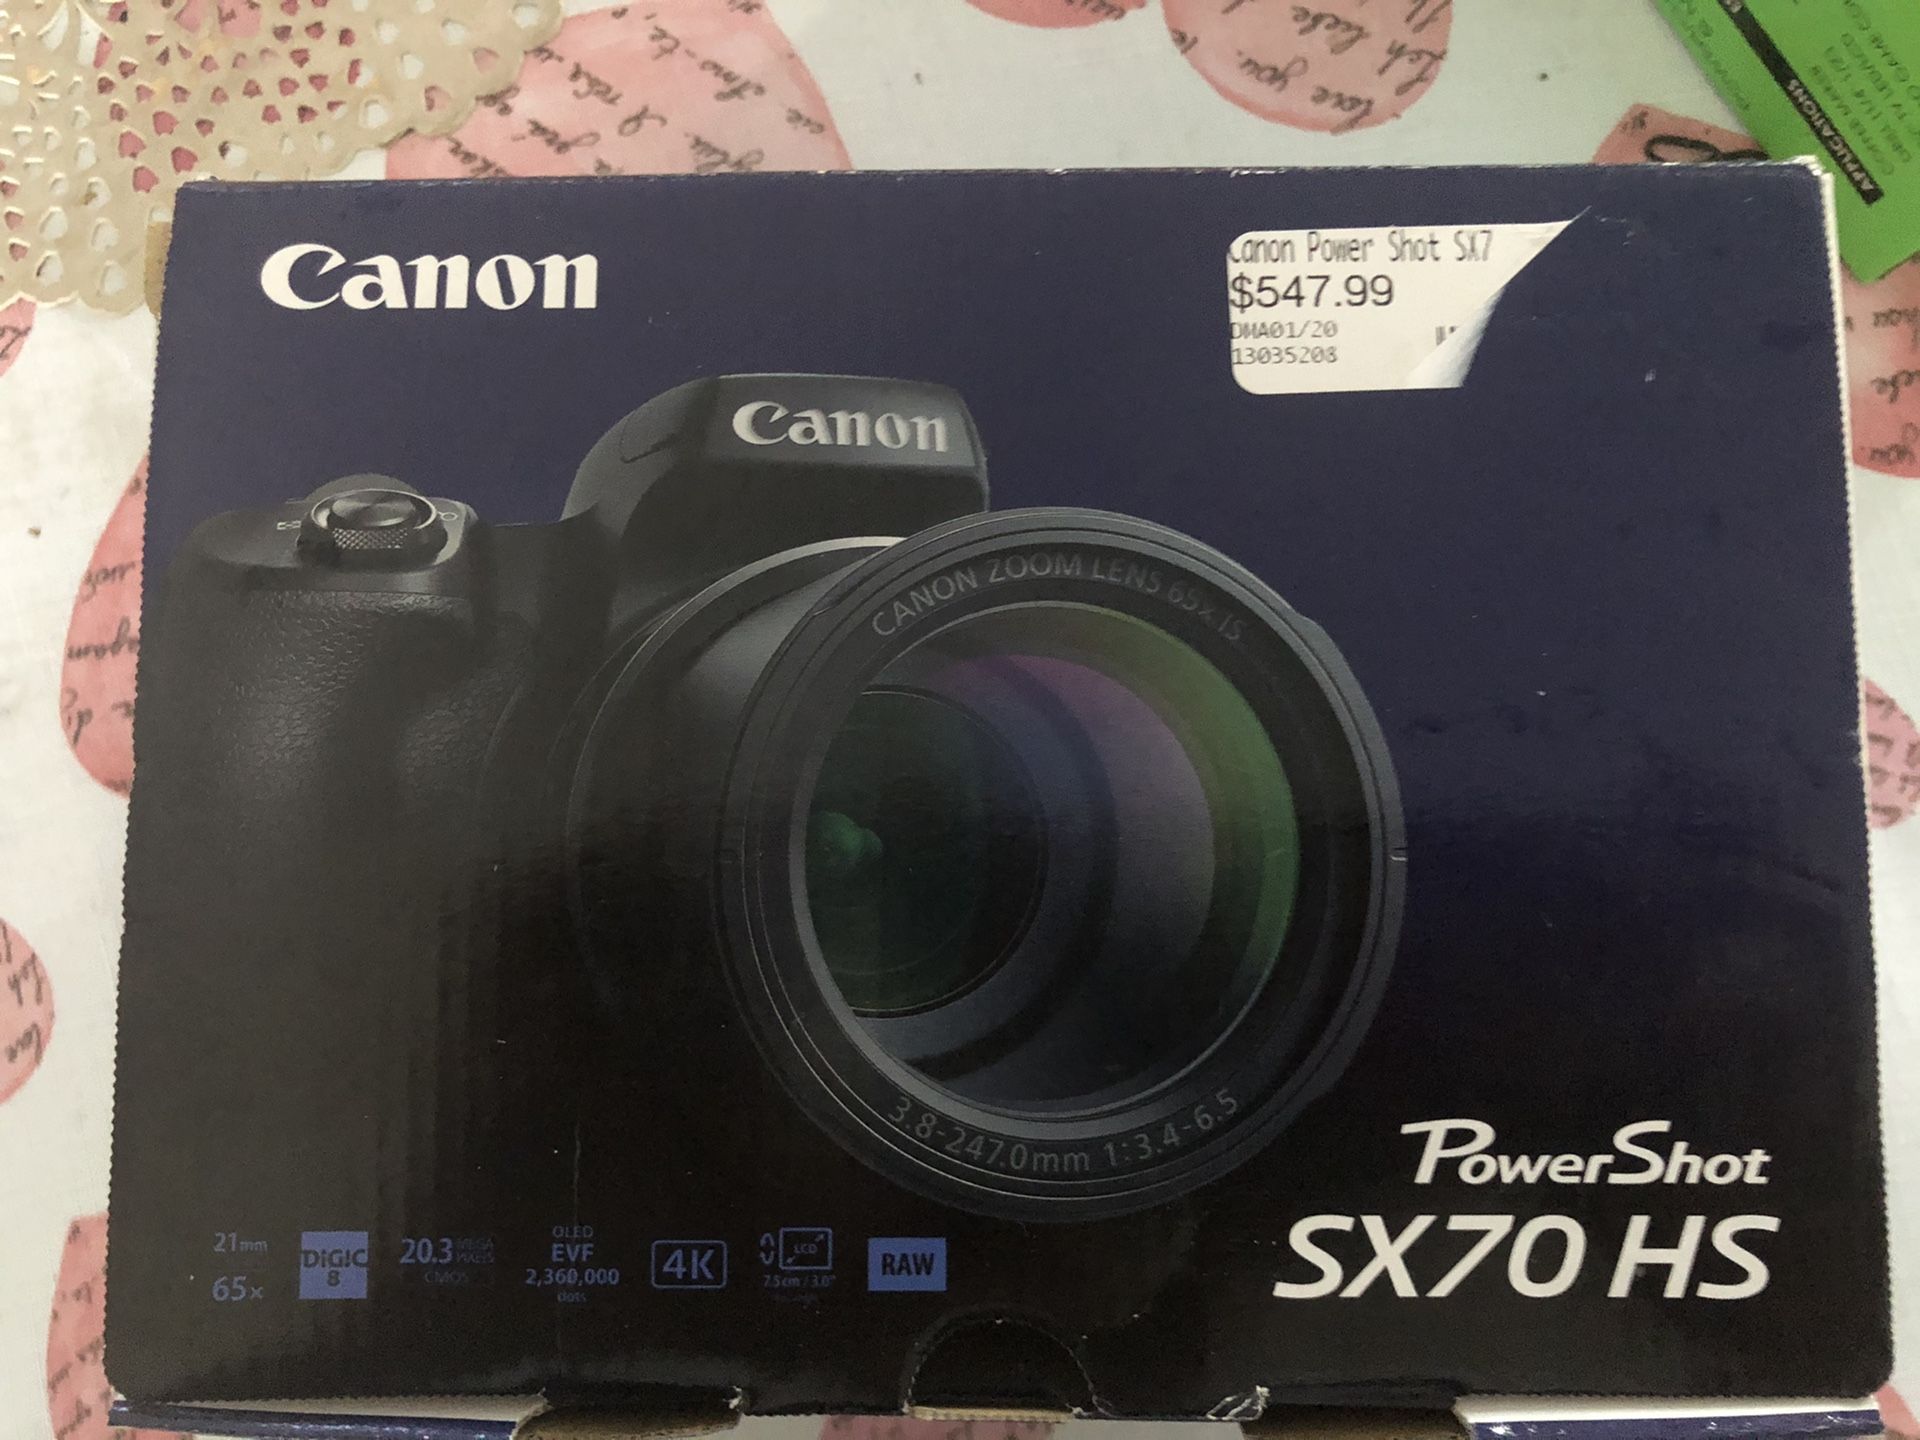 Canon powershot SX70 HS